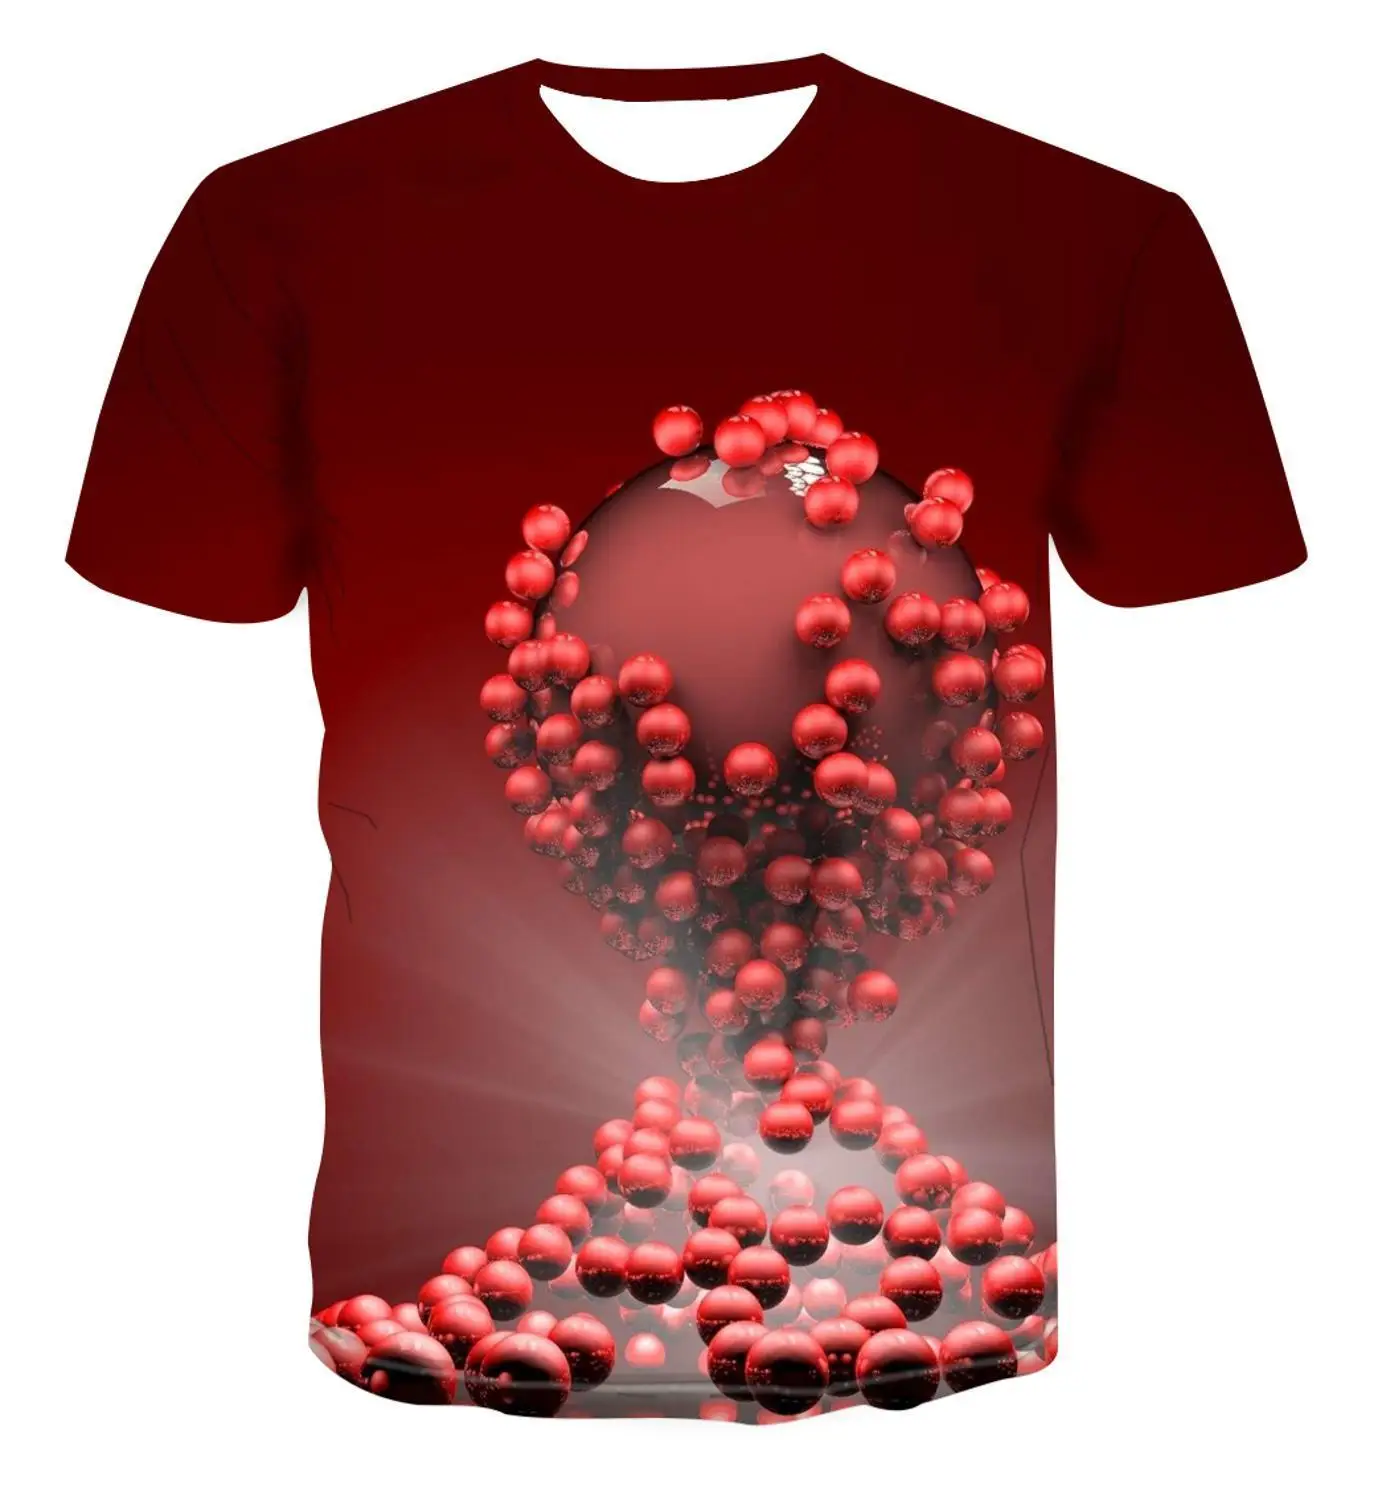 

Популярная модная футболка 2021, футболка с геометрическим круглым рисунком, мужской простой цветной Топ, крутой уникальный красивый 3d-принт,...